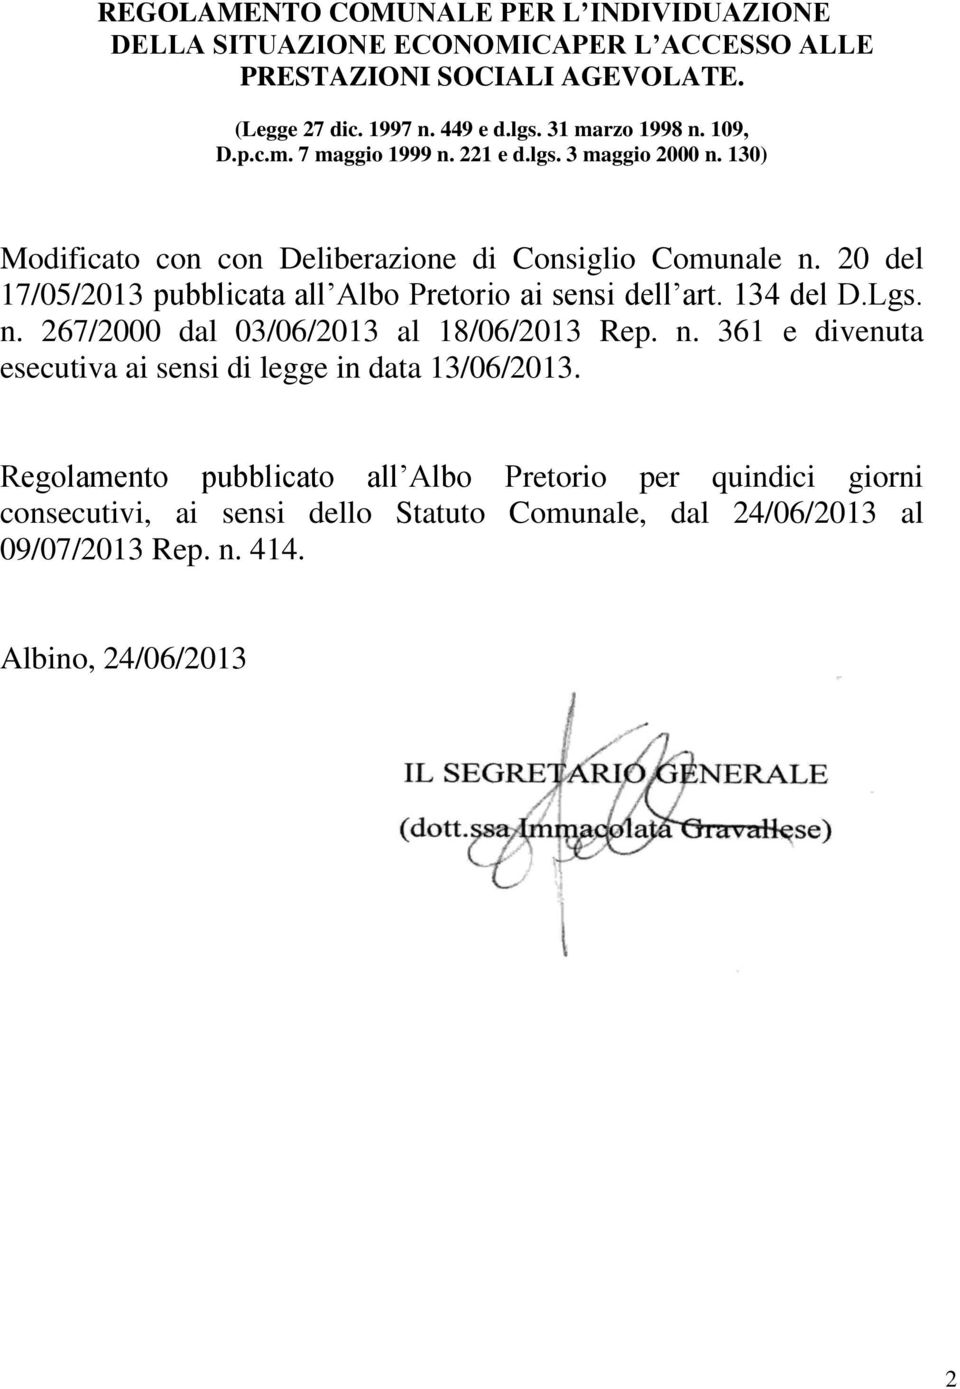 20 del 17/05/2013 pubblicata all Albo Pretorio ai sensi dell art. 134 del D.Lgs. n. 267/2000 dal 03/06/2013 al 18/06/2013 Rep. n. 361 e divenuta esecutiva ai sensi di legge in data 13/06/2013.